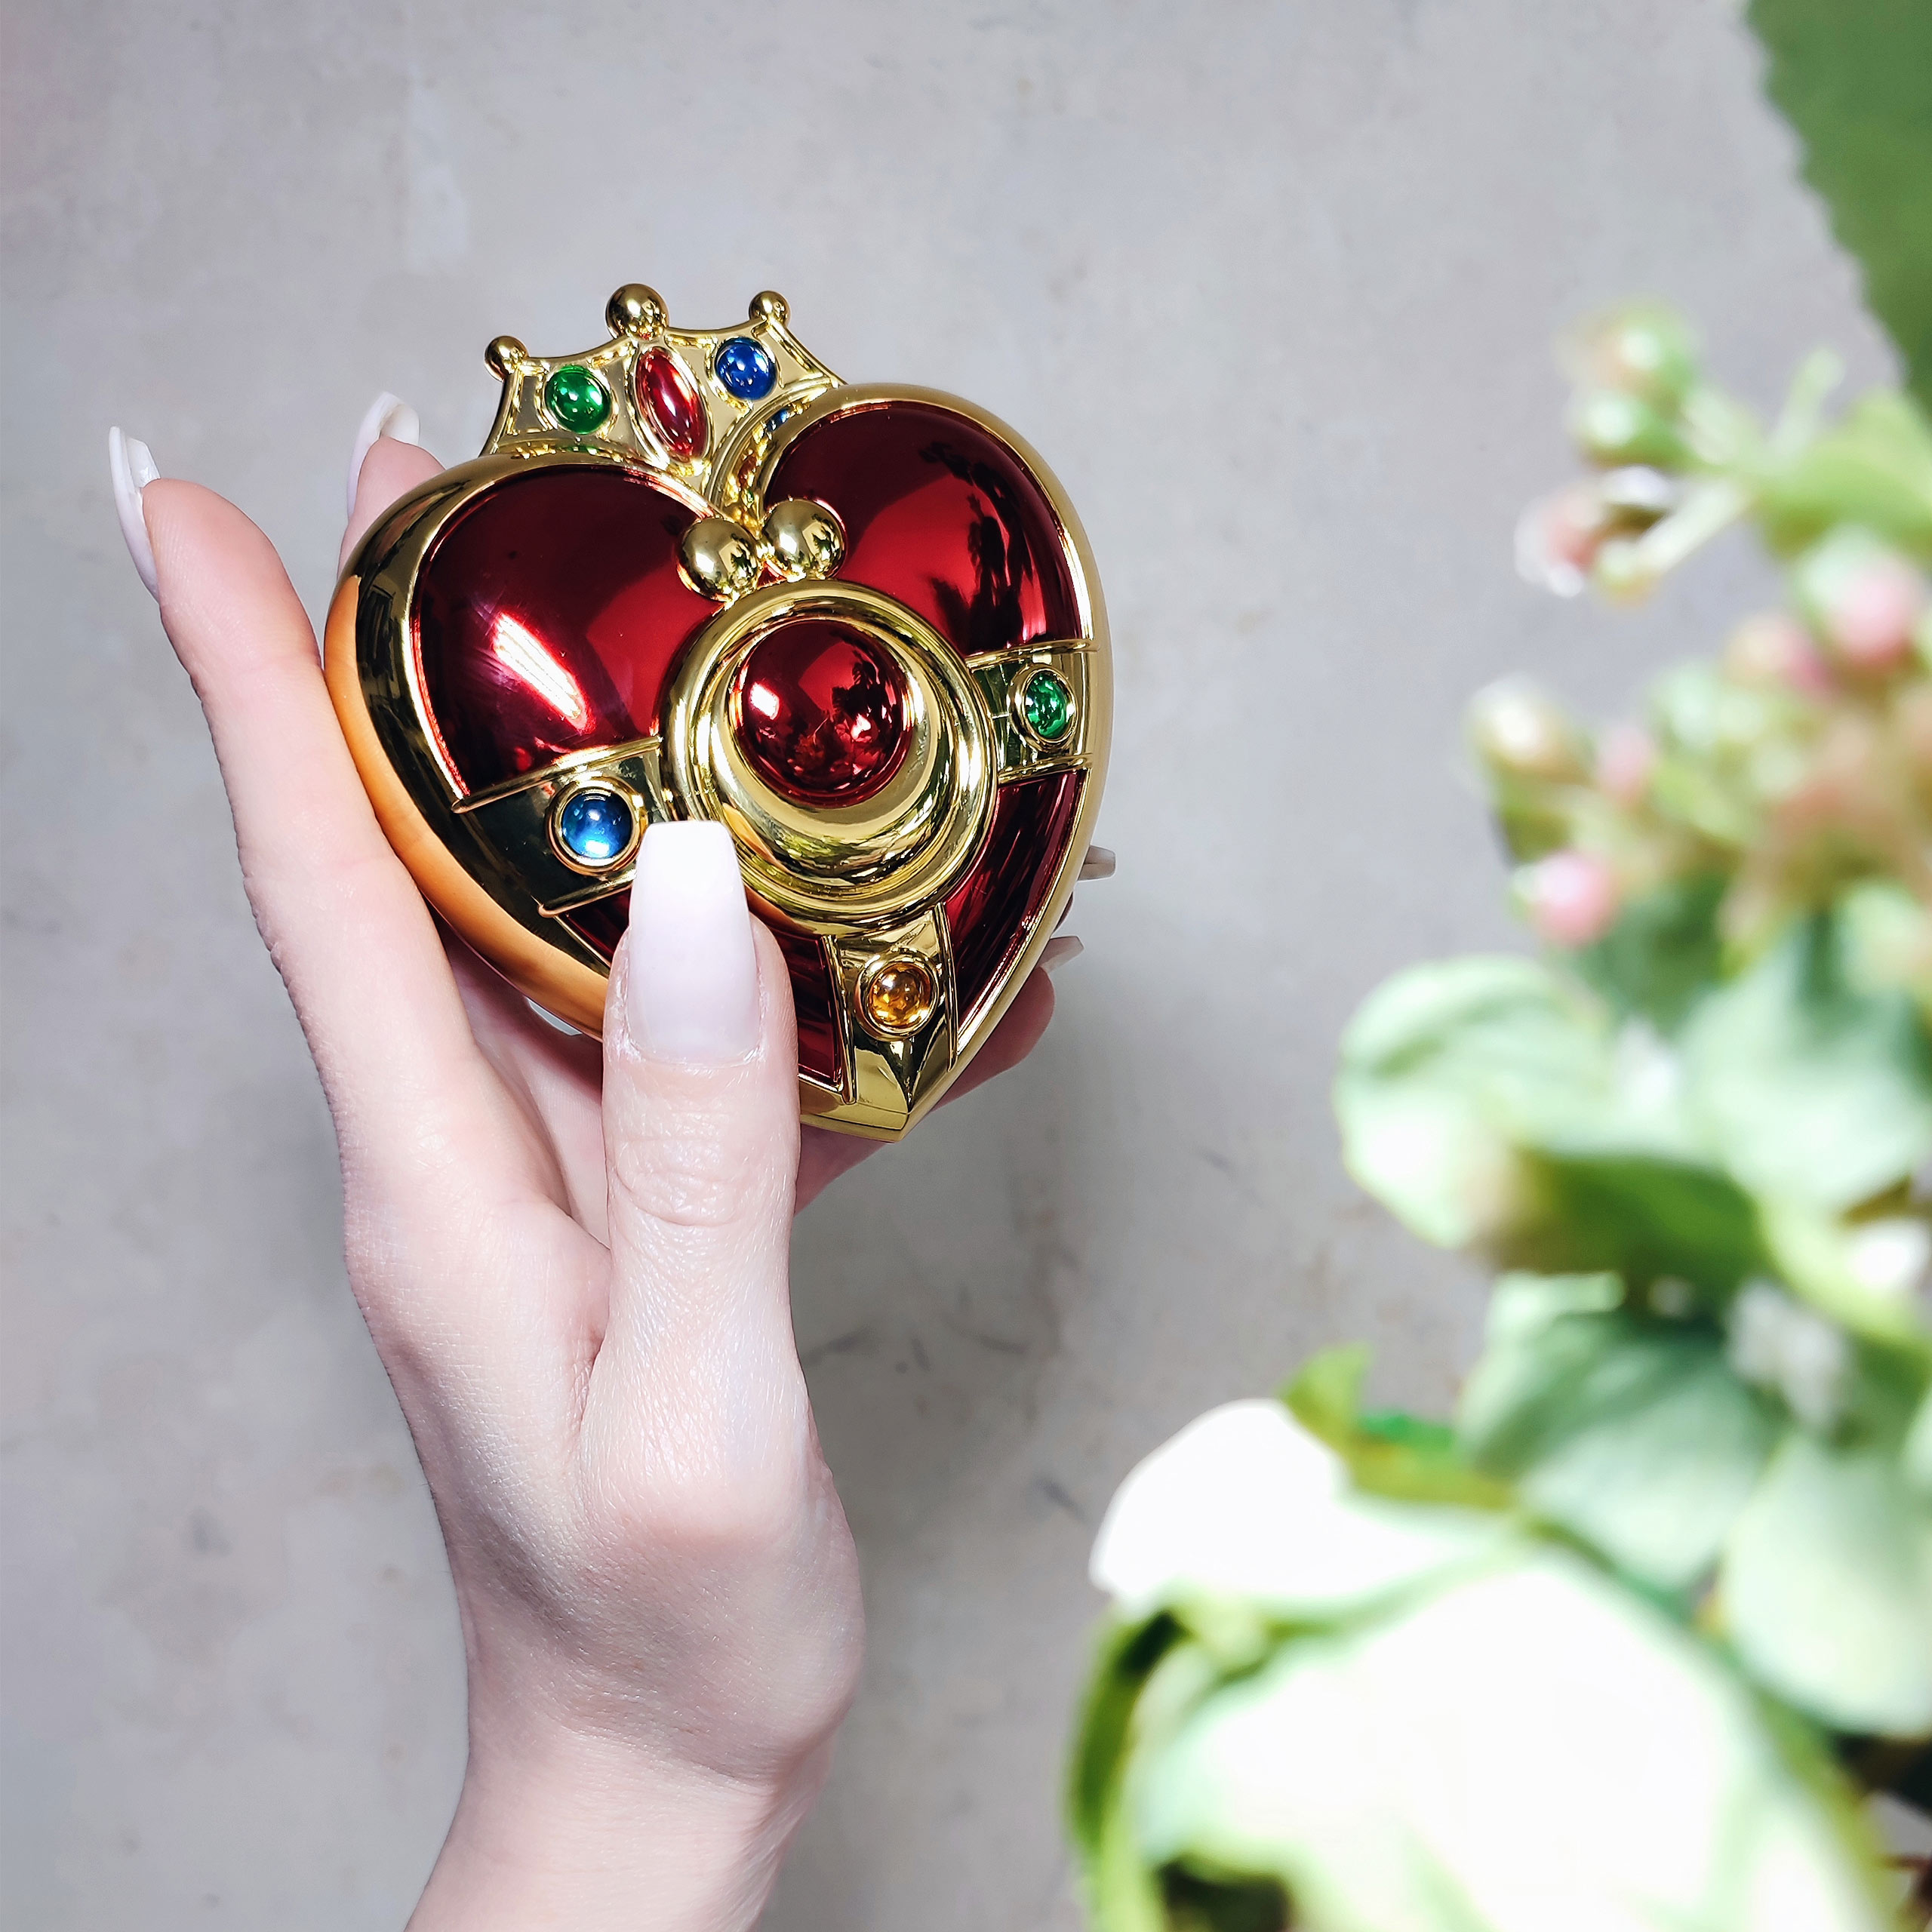 Sailor Moon - Cosmic Heart Compact Brosche Replik